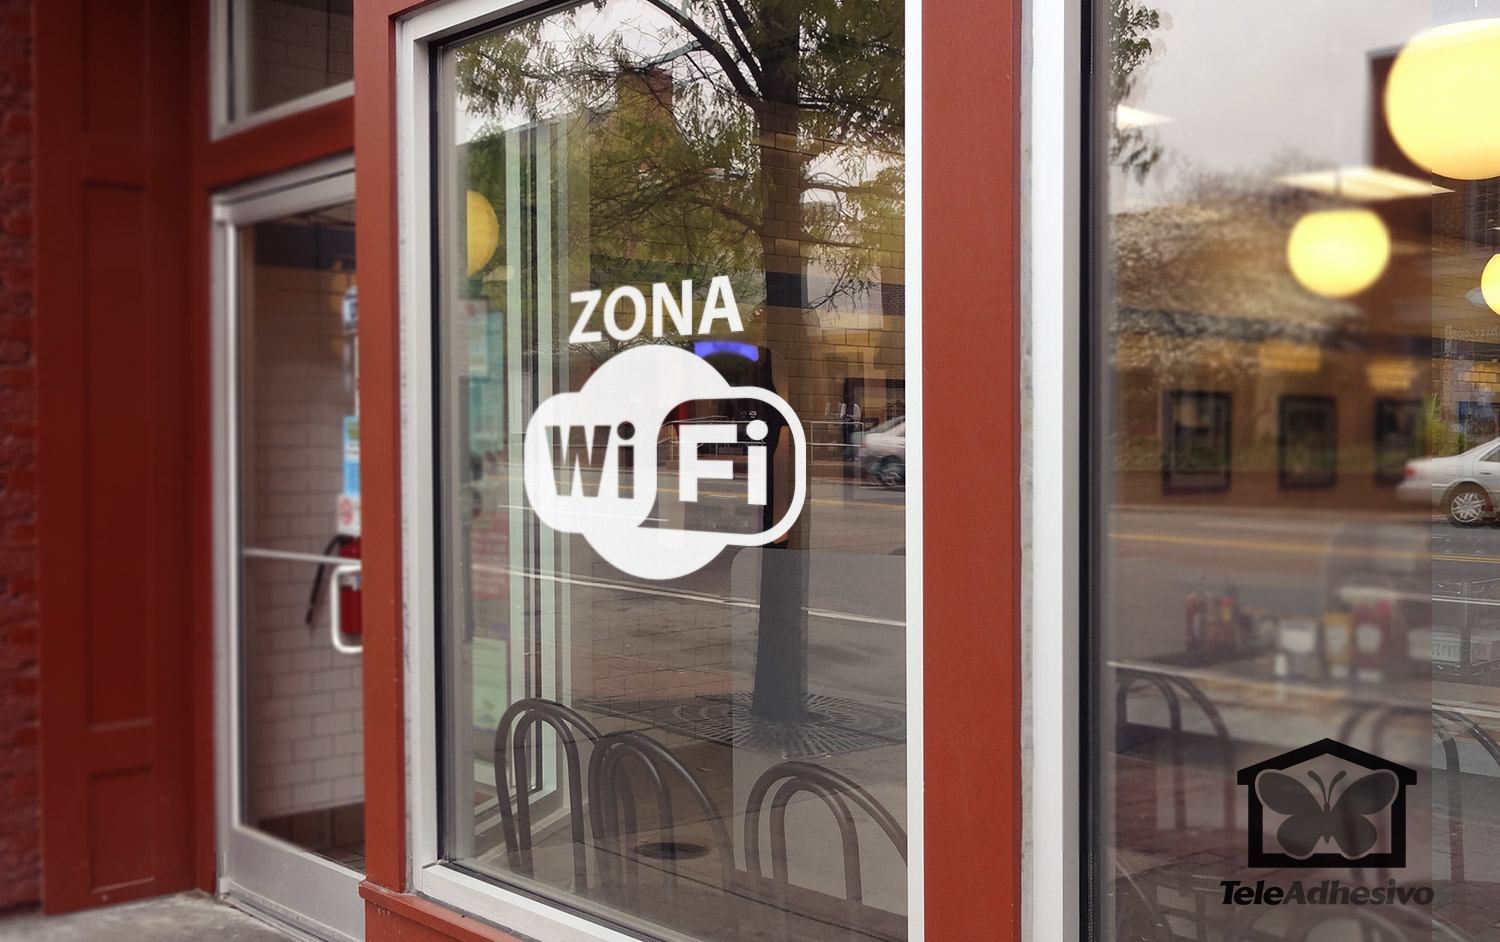 Wandtattoos: Zona Wifi